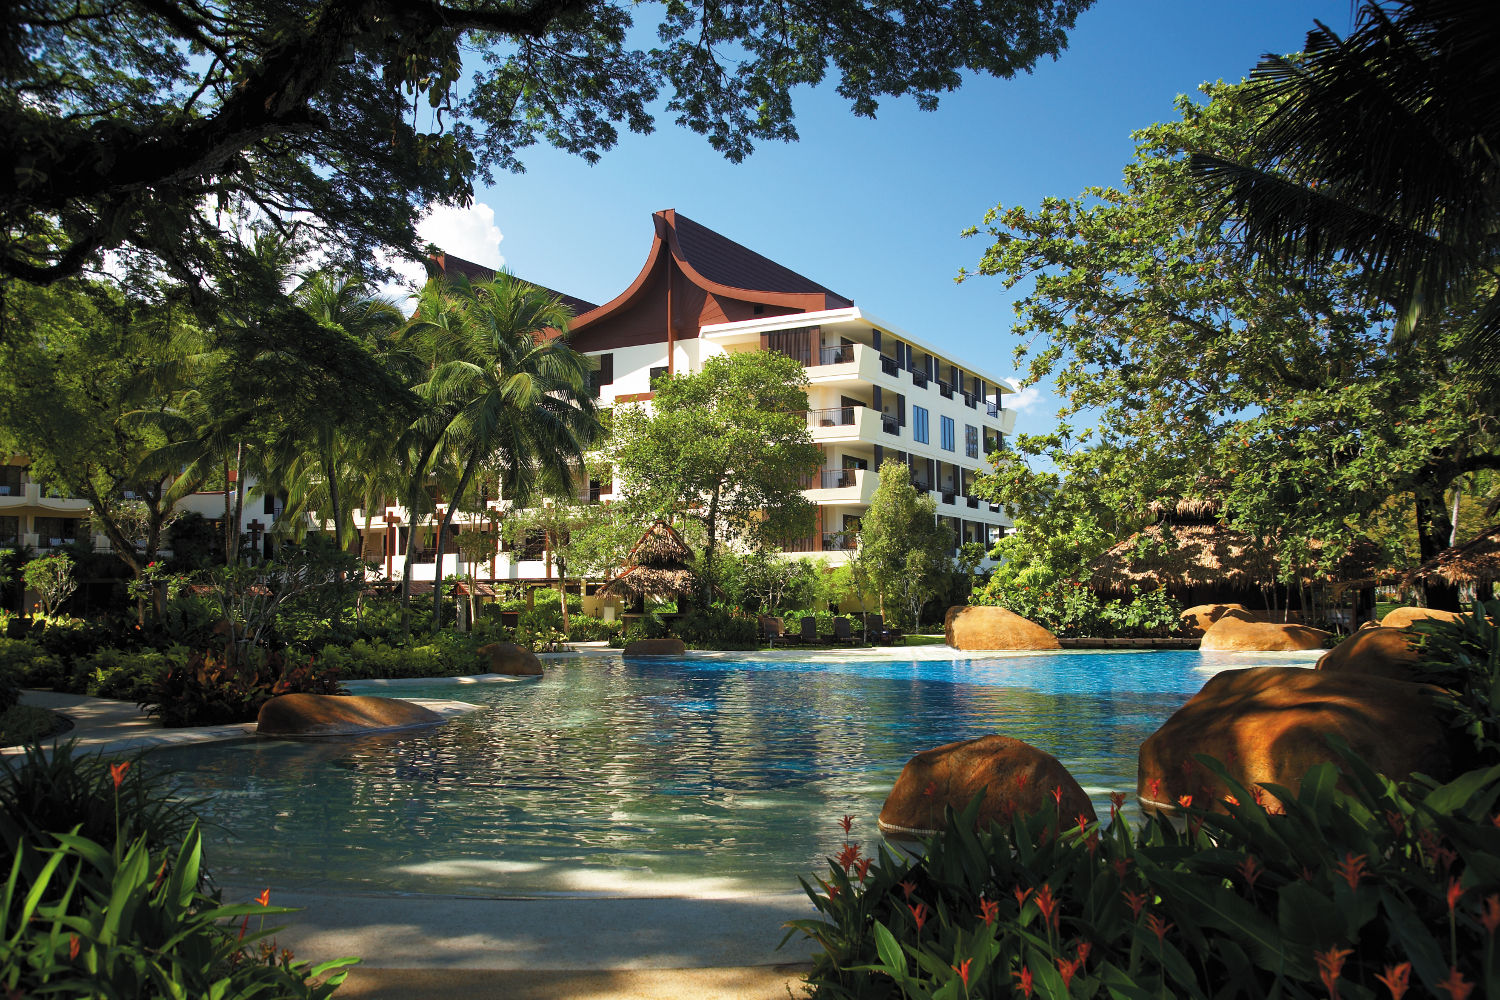 [AD] Special rates for Malaysians at Shangri-La’s Penang resorts